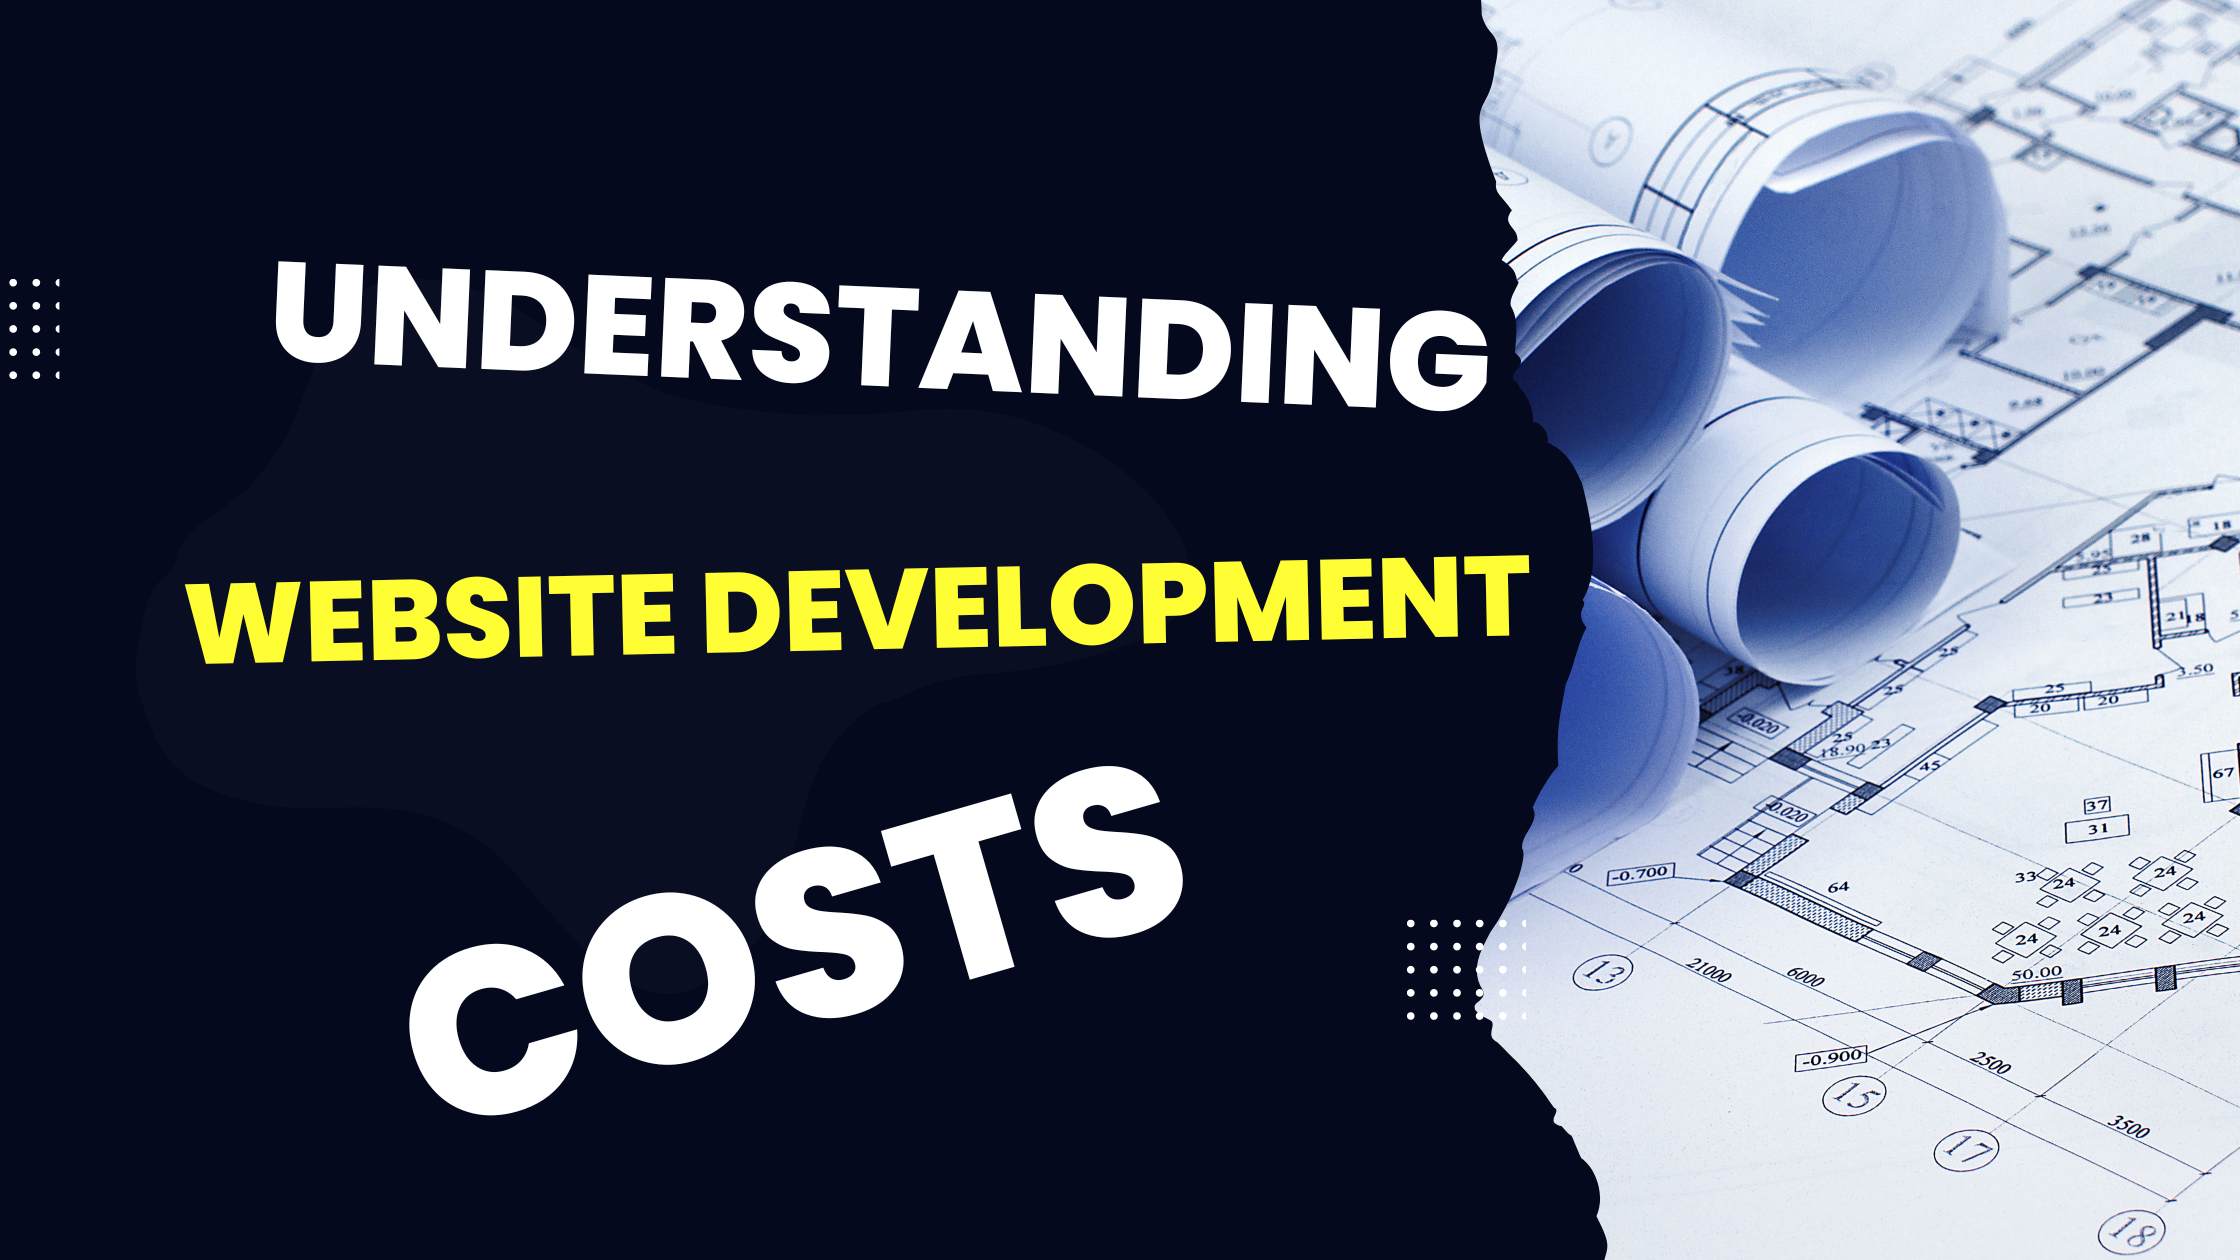 Understanding website development costs